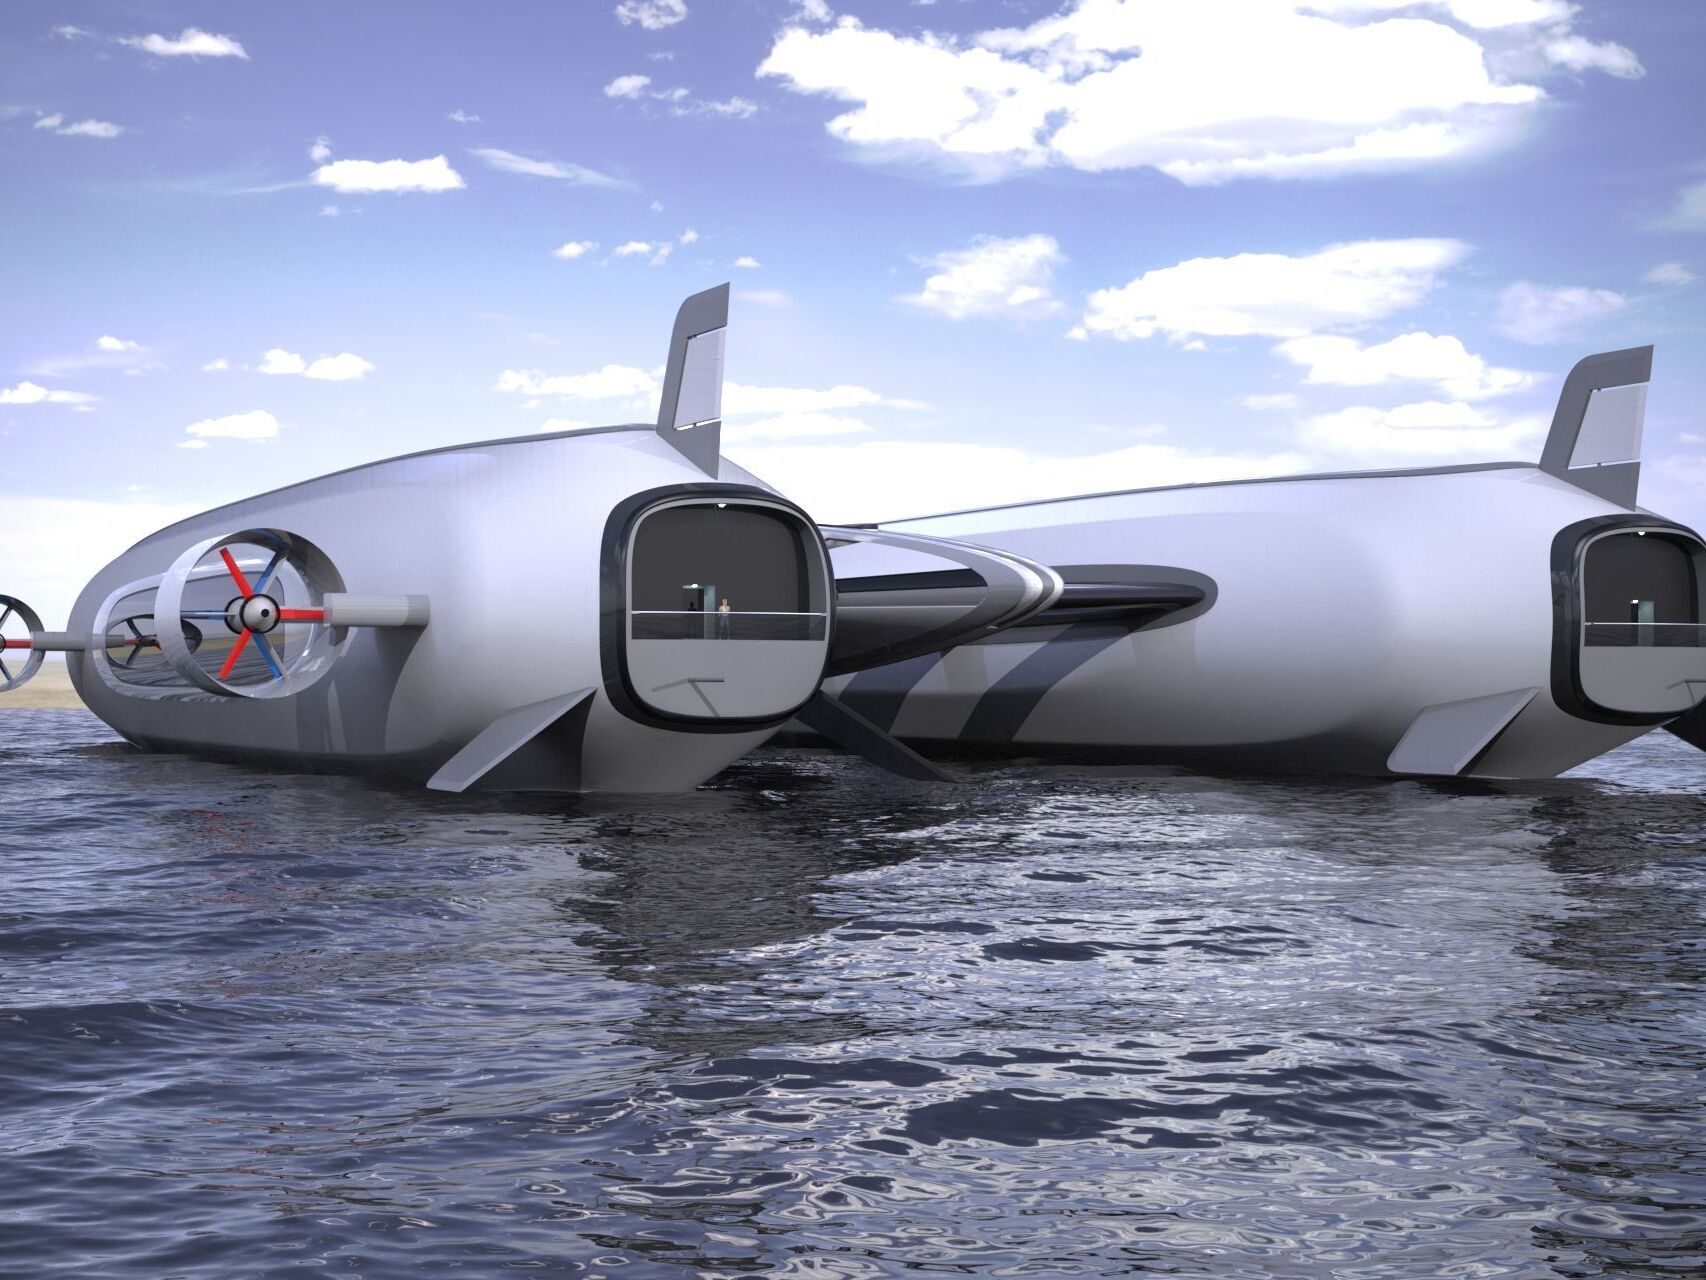 由 Lazzarini Design 工作室开发的“空中游艇”概念，用于可持续的空中和水上交通